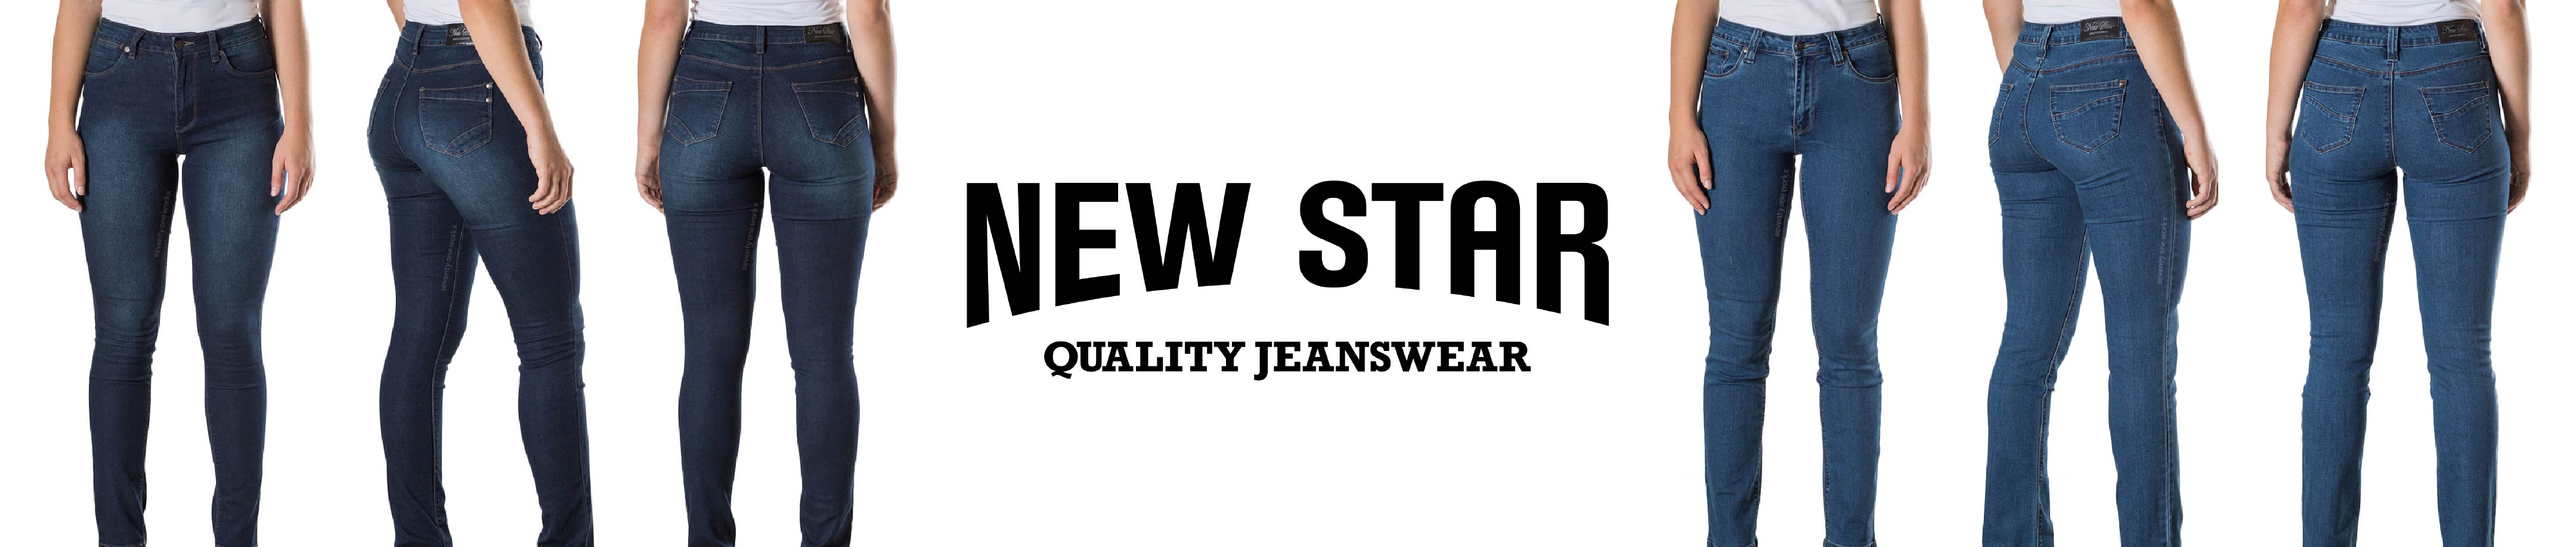 New Star jeanswear